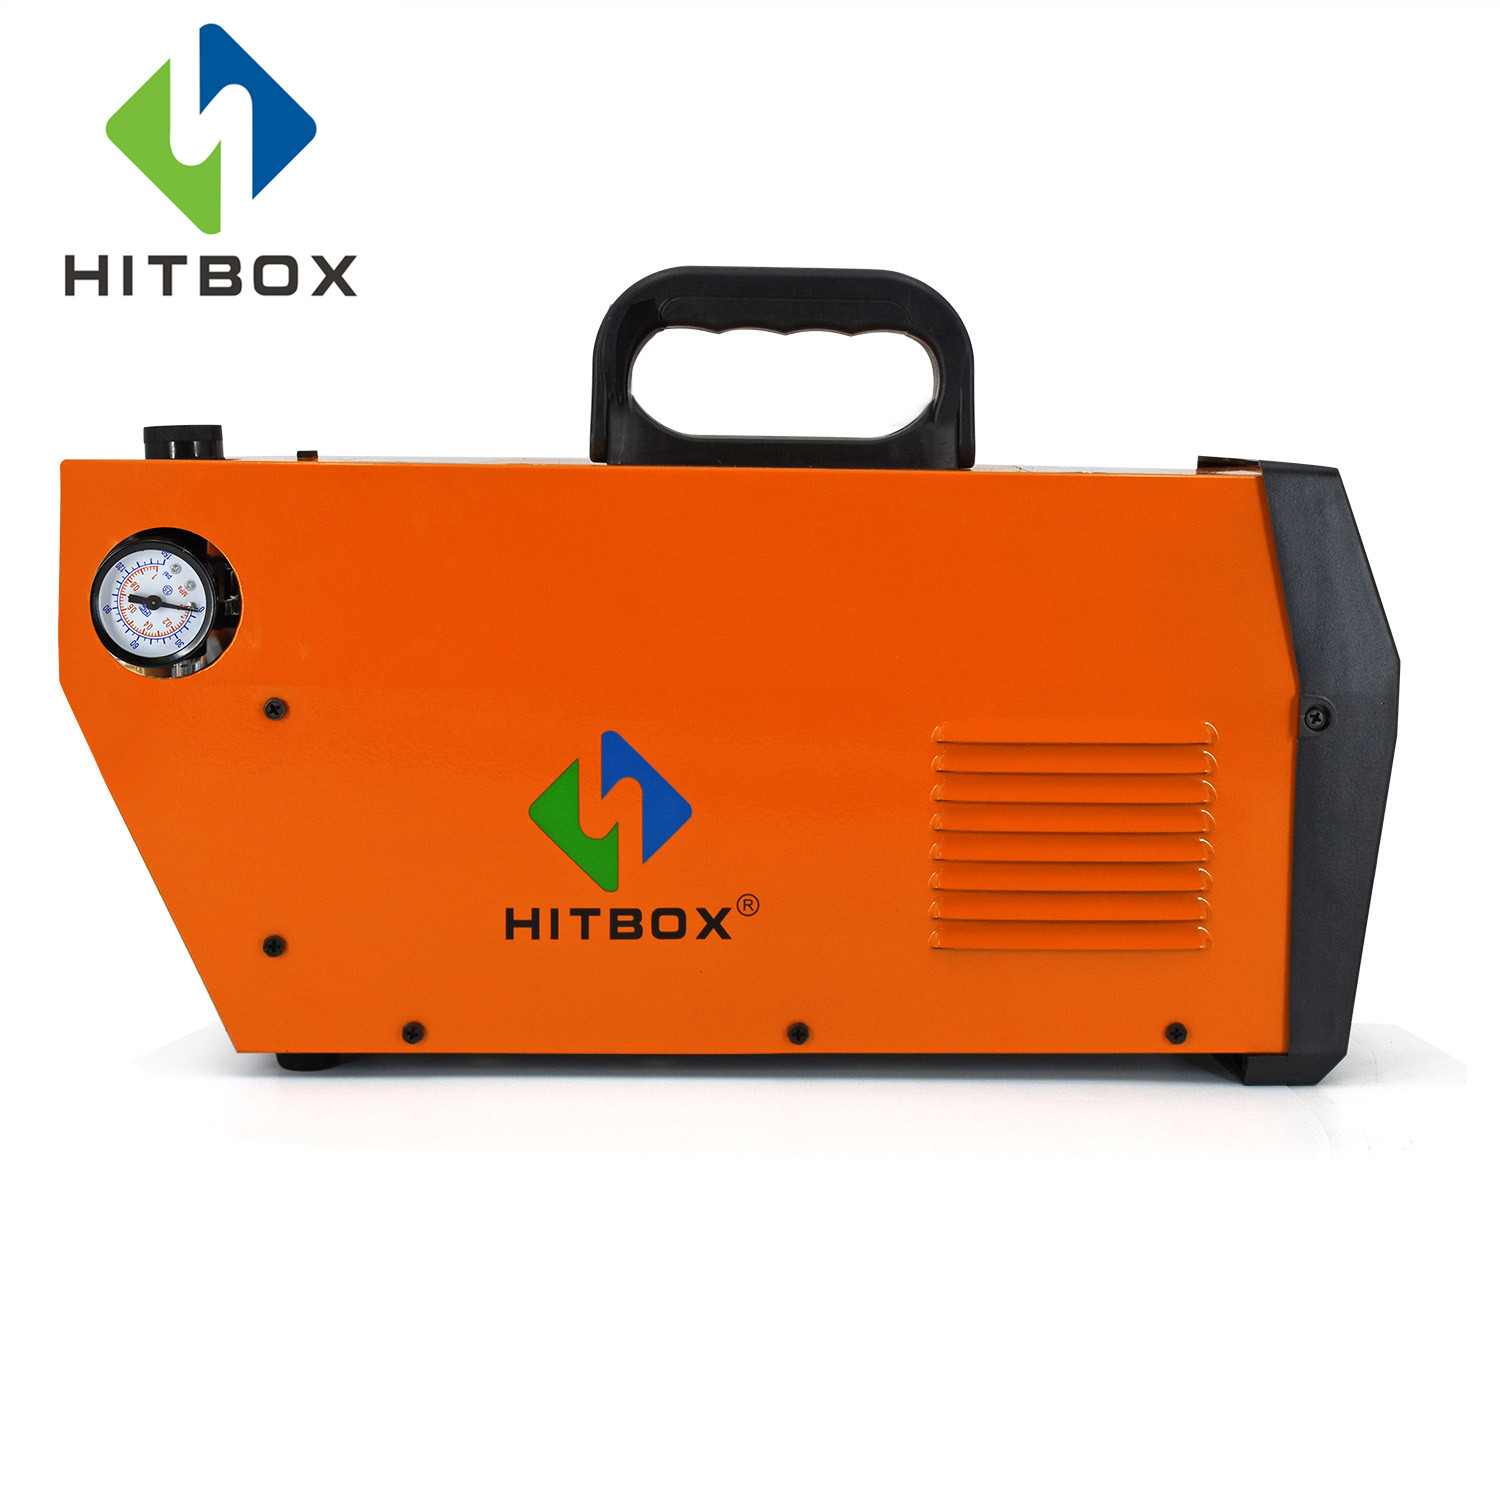 HITBOX Plasma Cutter Series CT520 HBC5500 Cut40 Cutting Machine Functional Cutter Cut Tig Arc 3 in 1 220V Professional Cutter